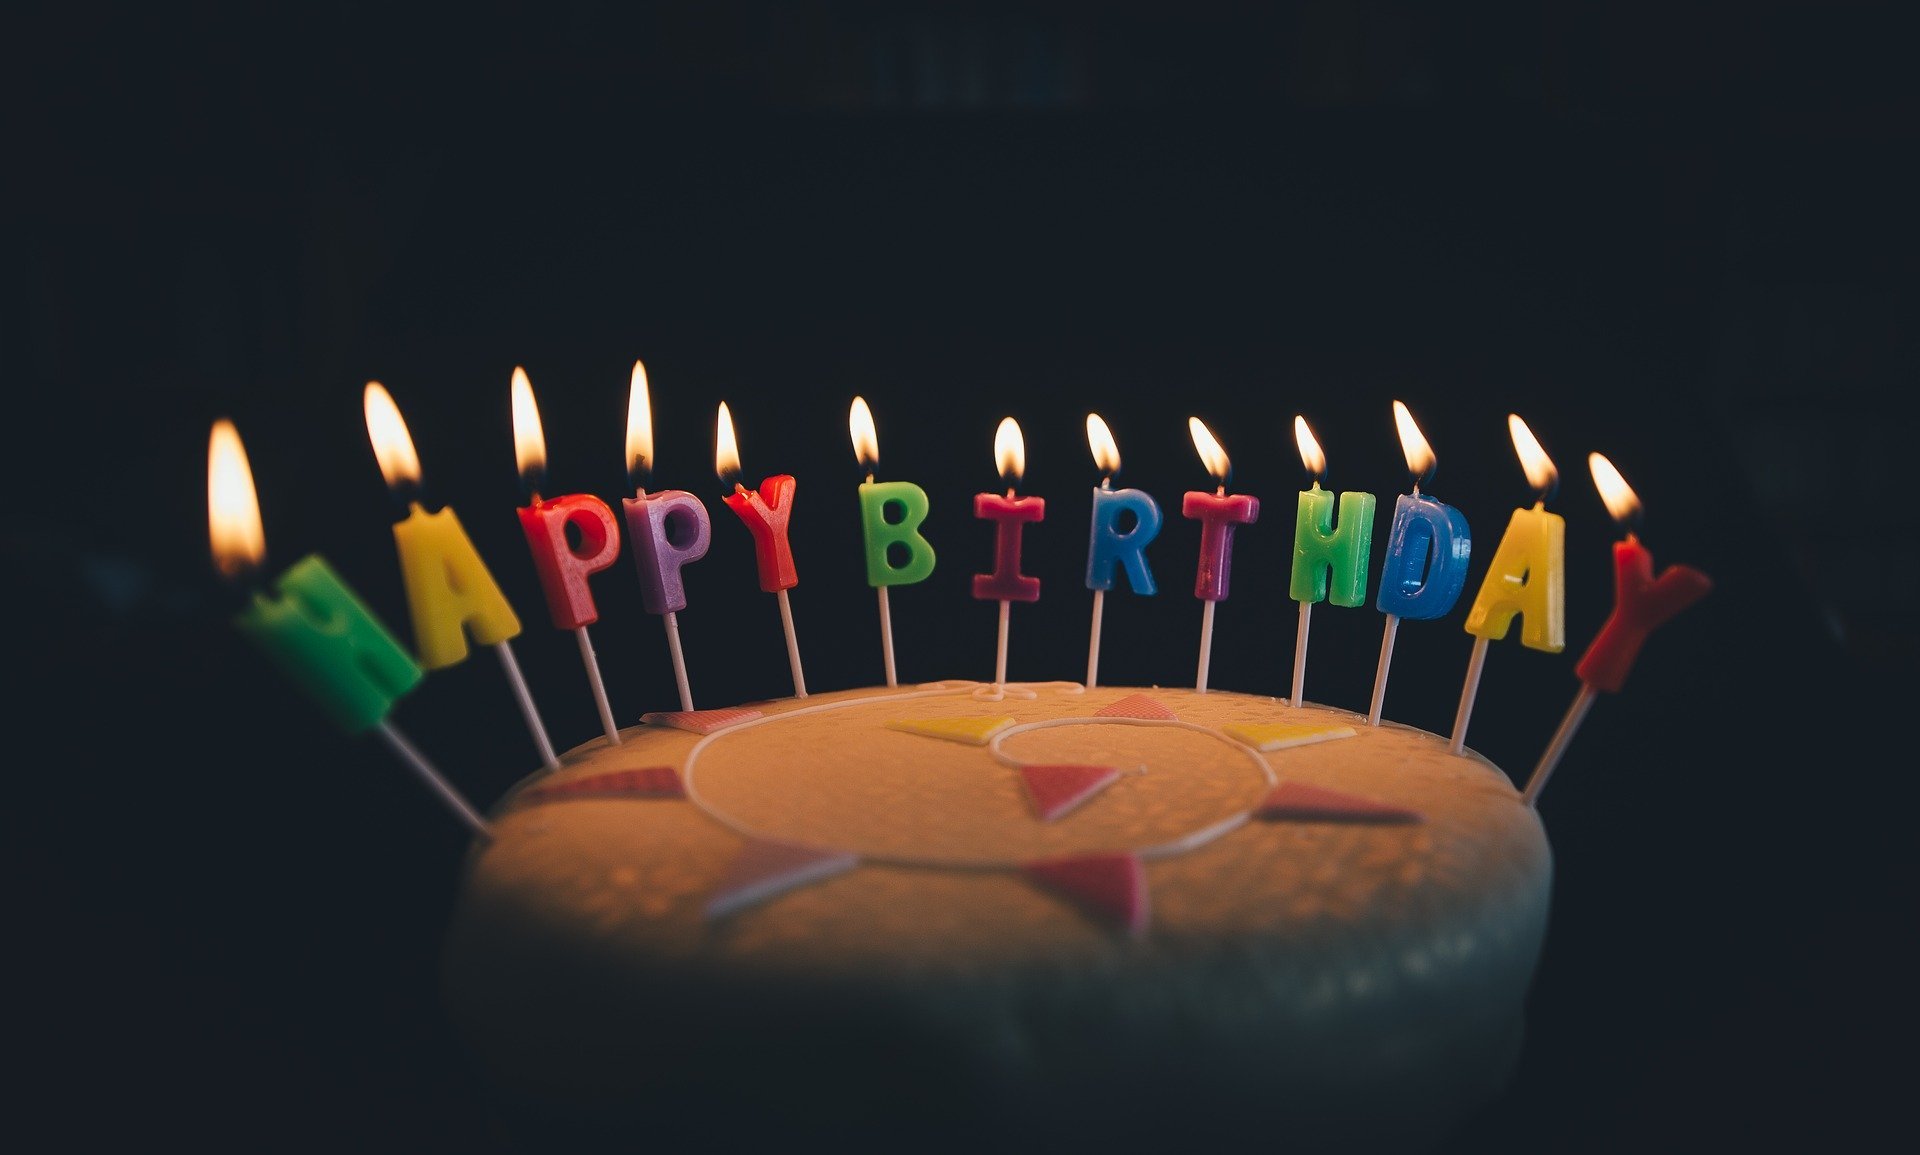 Bolo de aniversário com velas de aniversário formando a palavra feliz aniversário em inglês